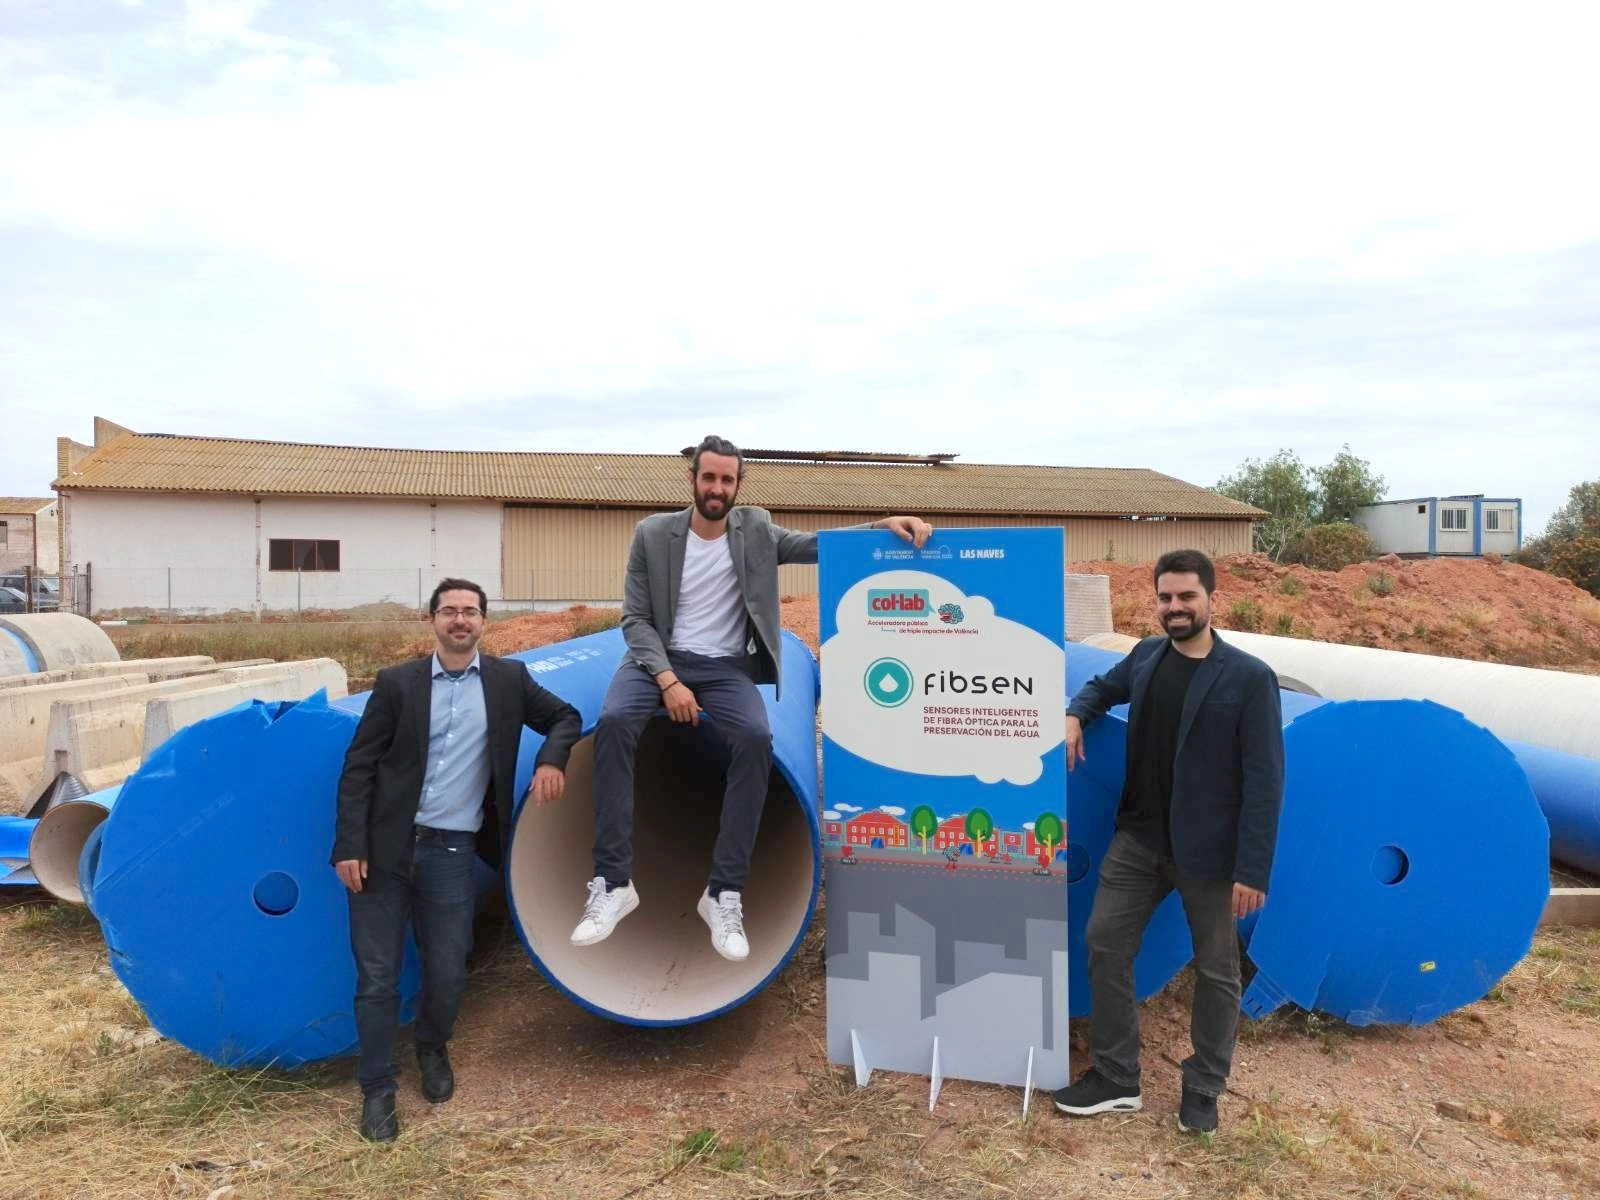 Fotografía de los responsables de Fibsen la startup para la gestión inteligente del agua